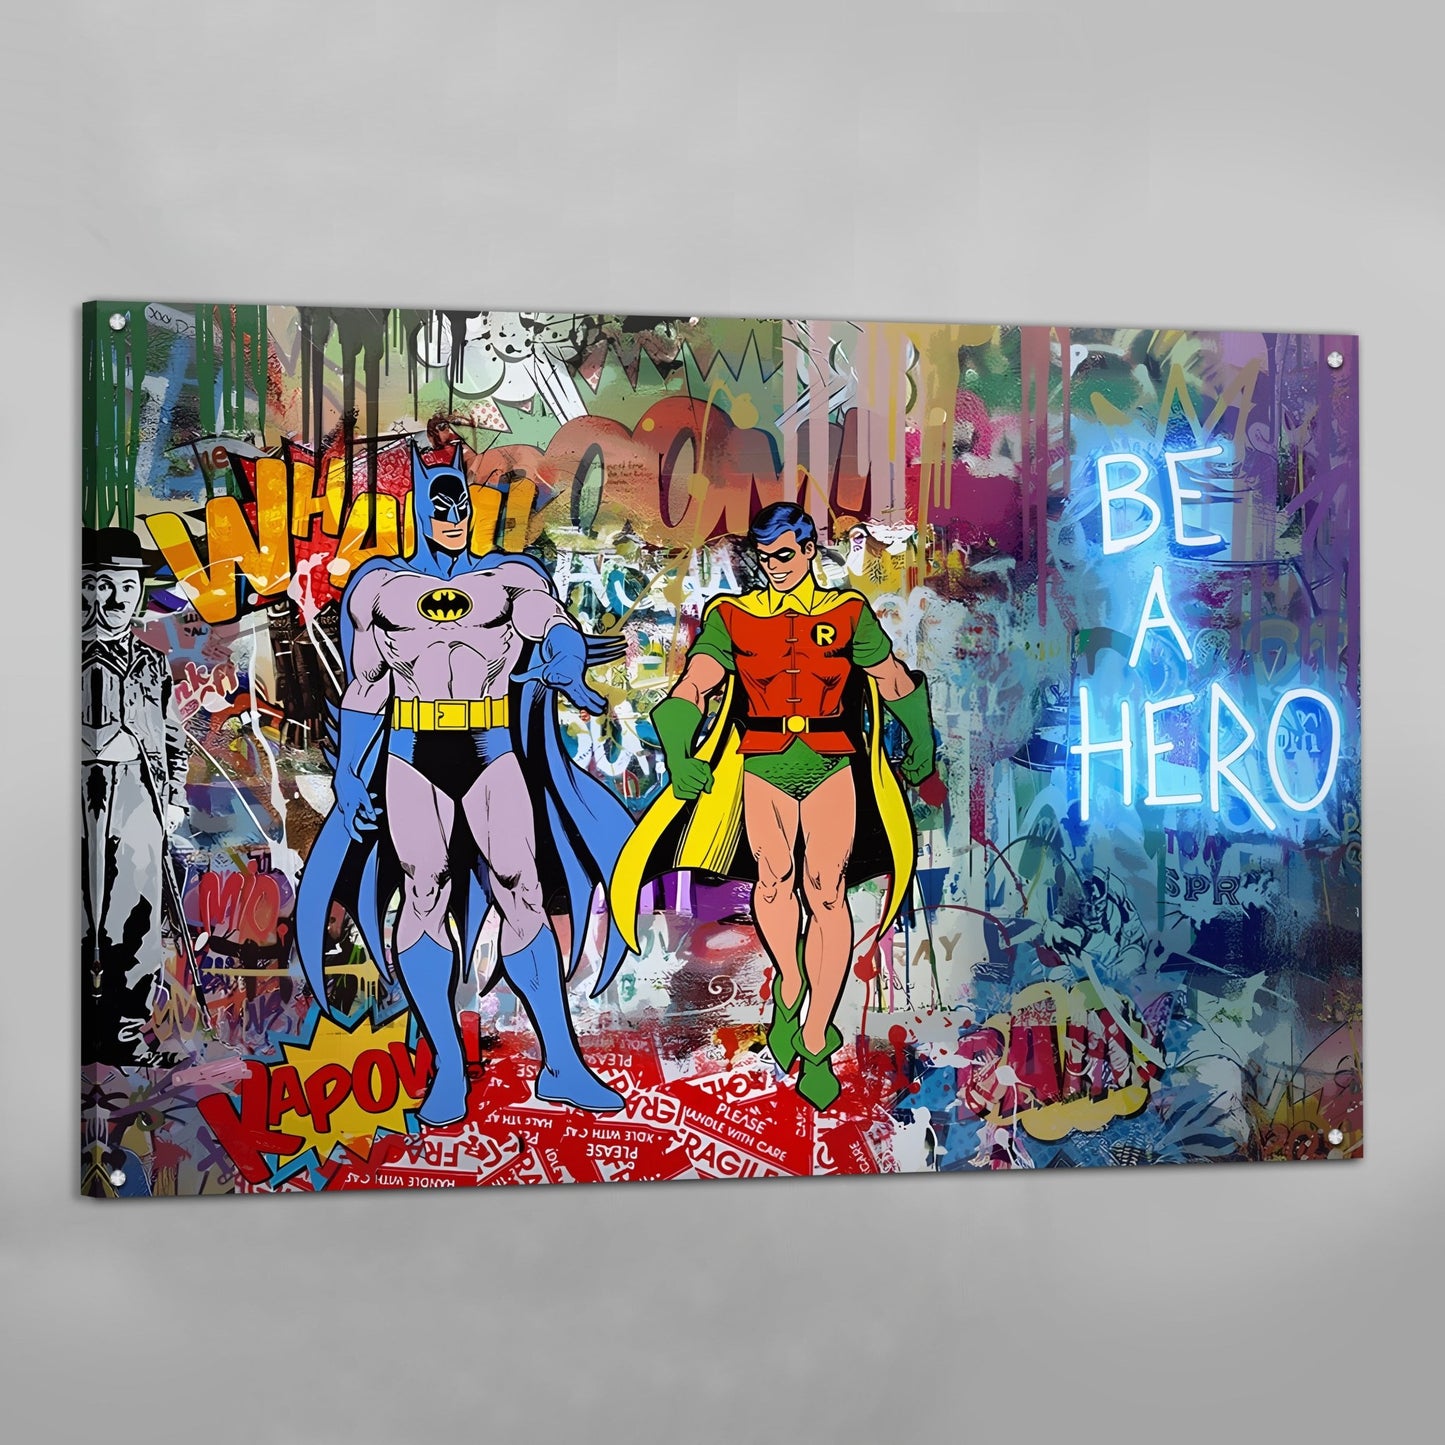 Wall Canvas Art | Luxury a Graffiti Art Hero Be